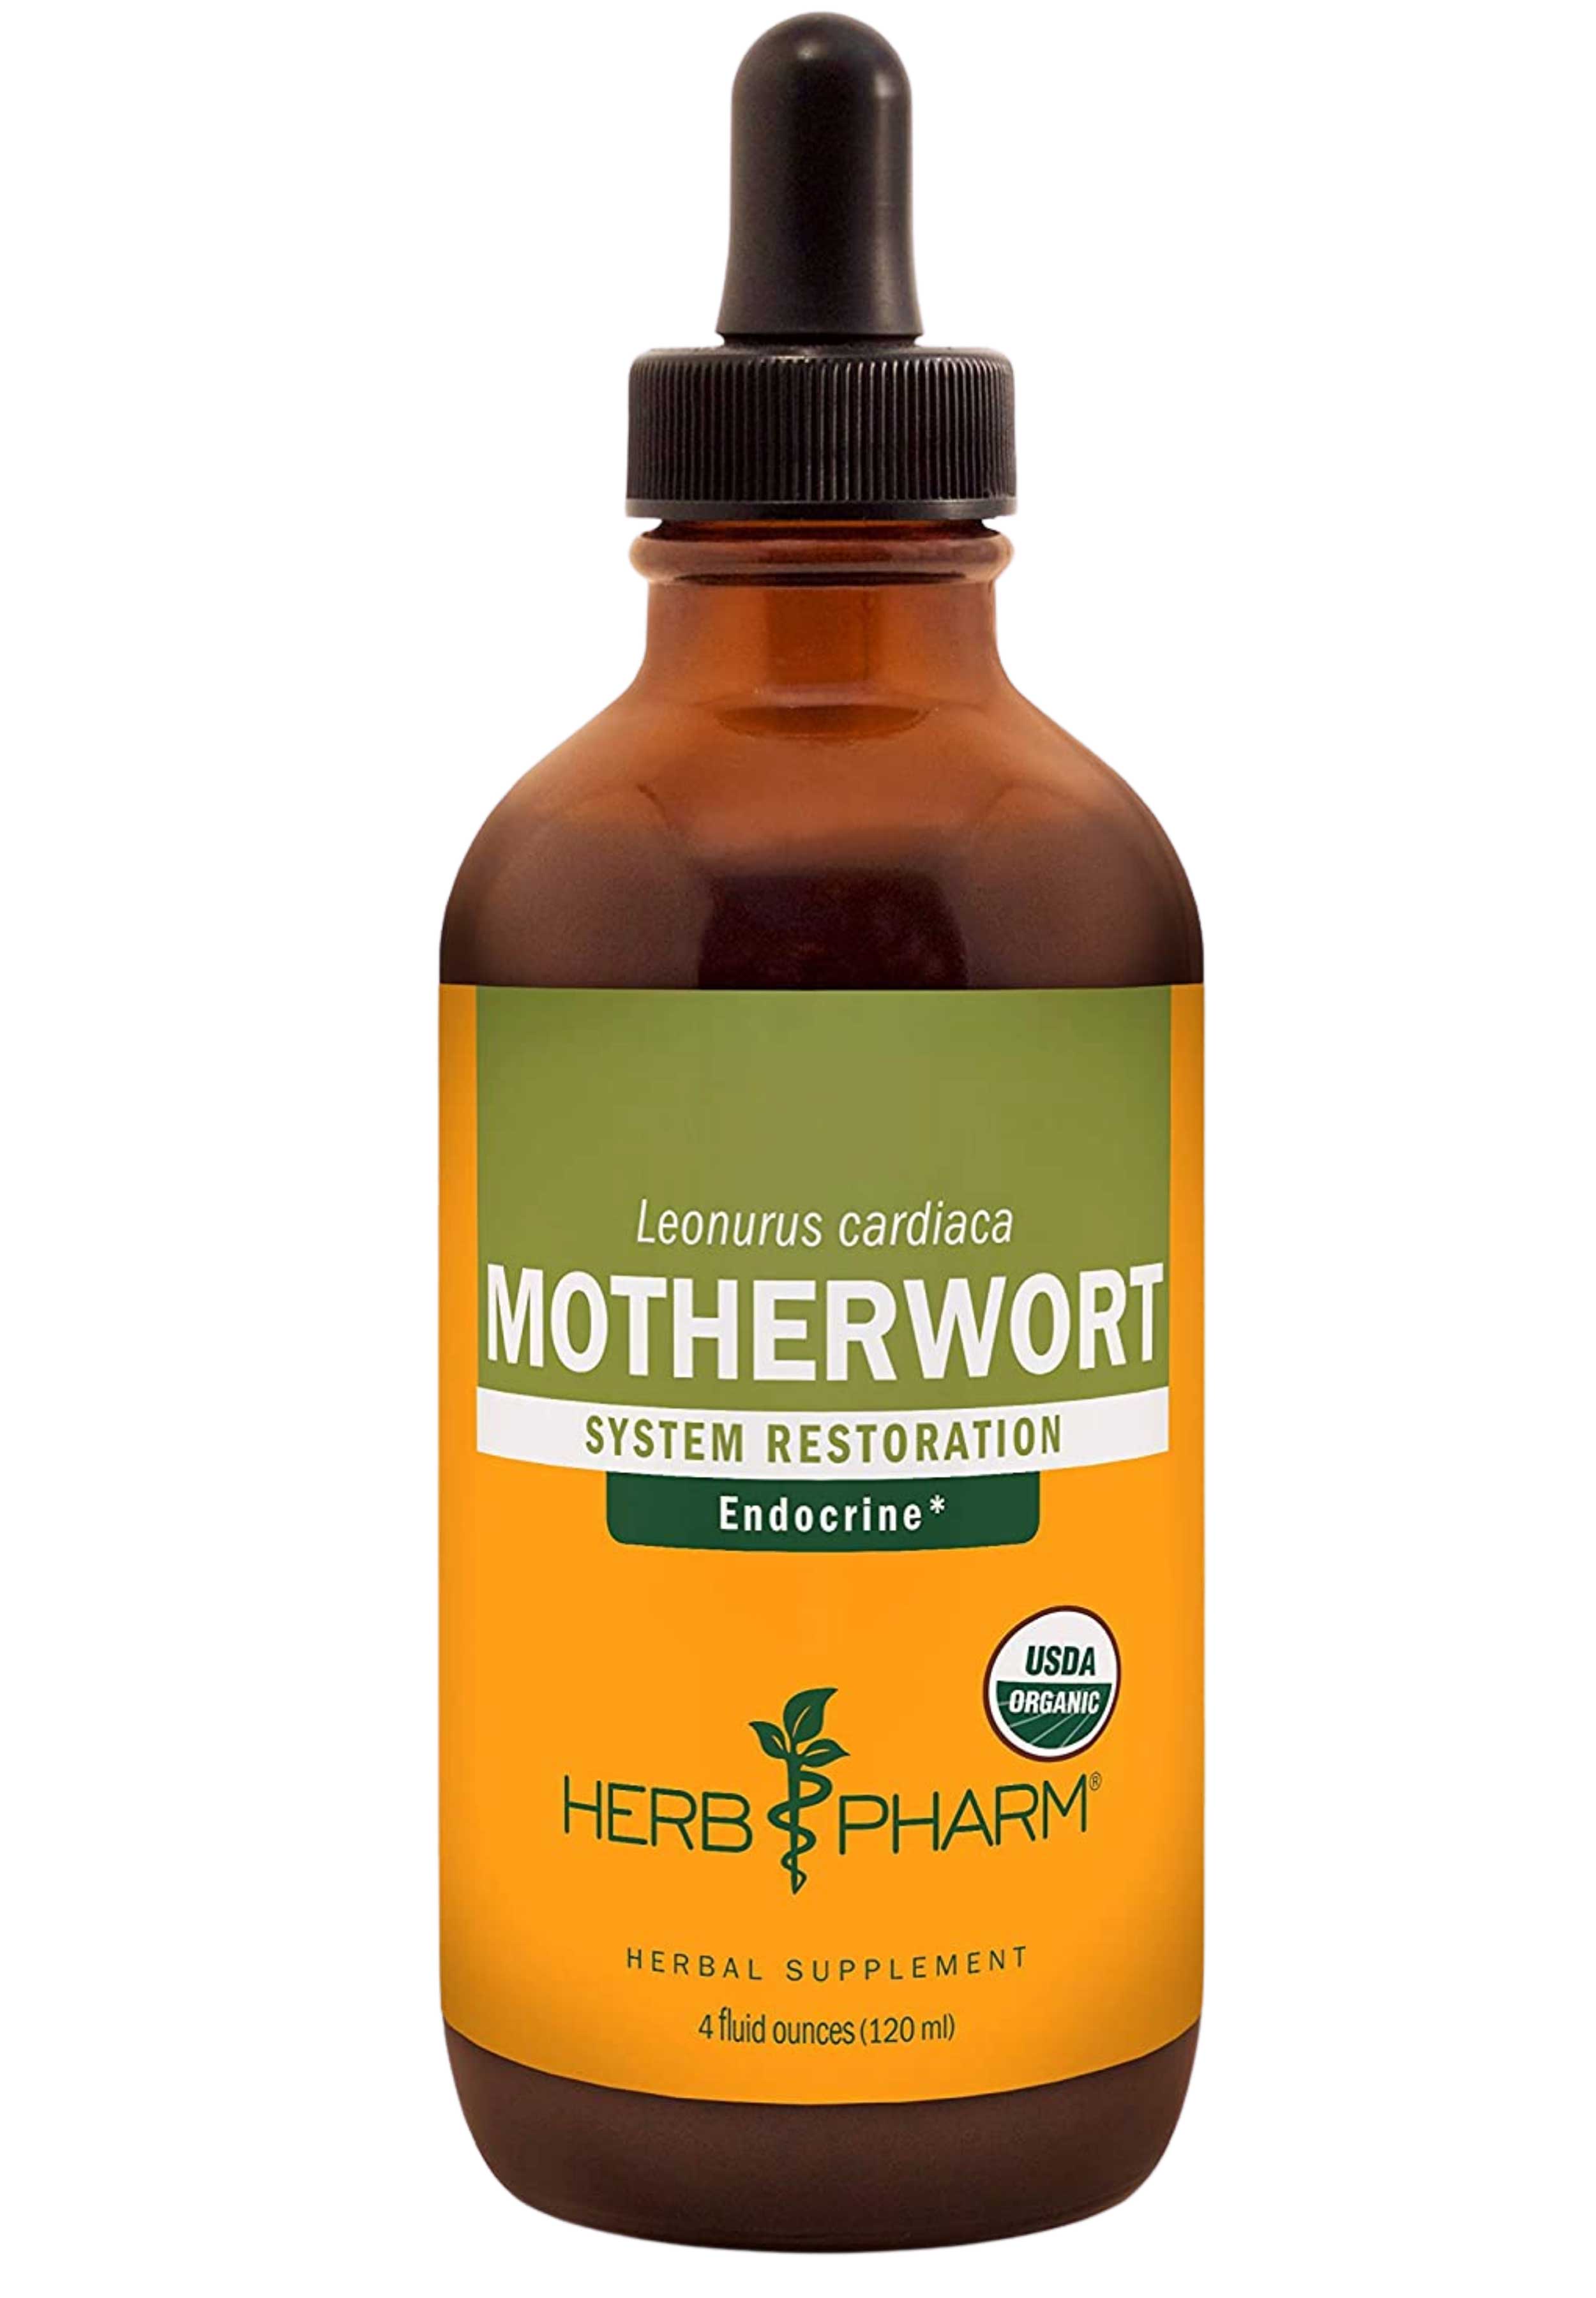 Herb Pharm Motherwort